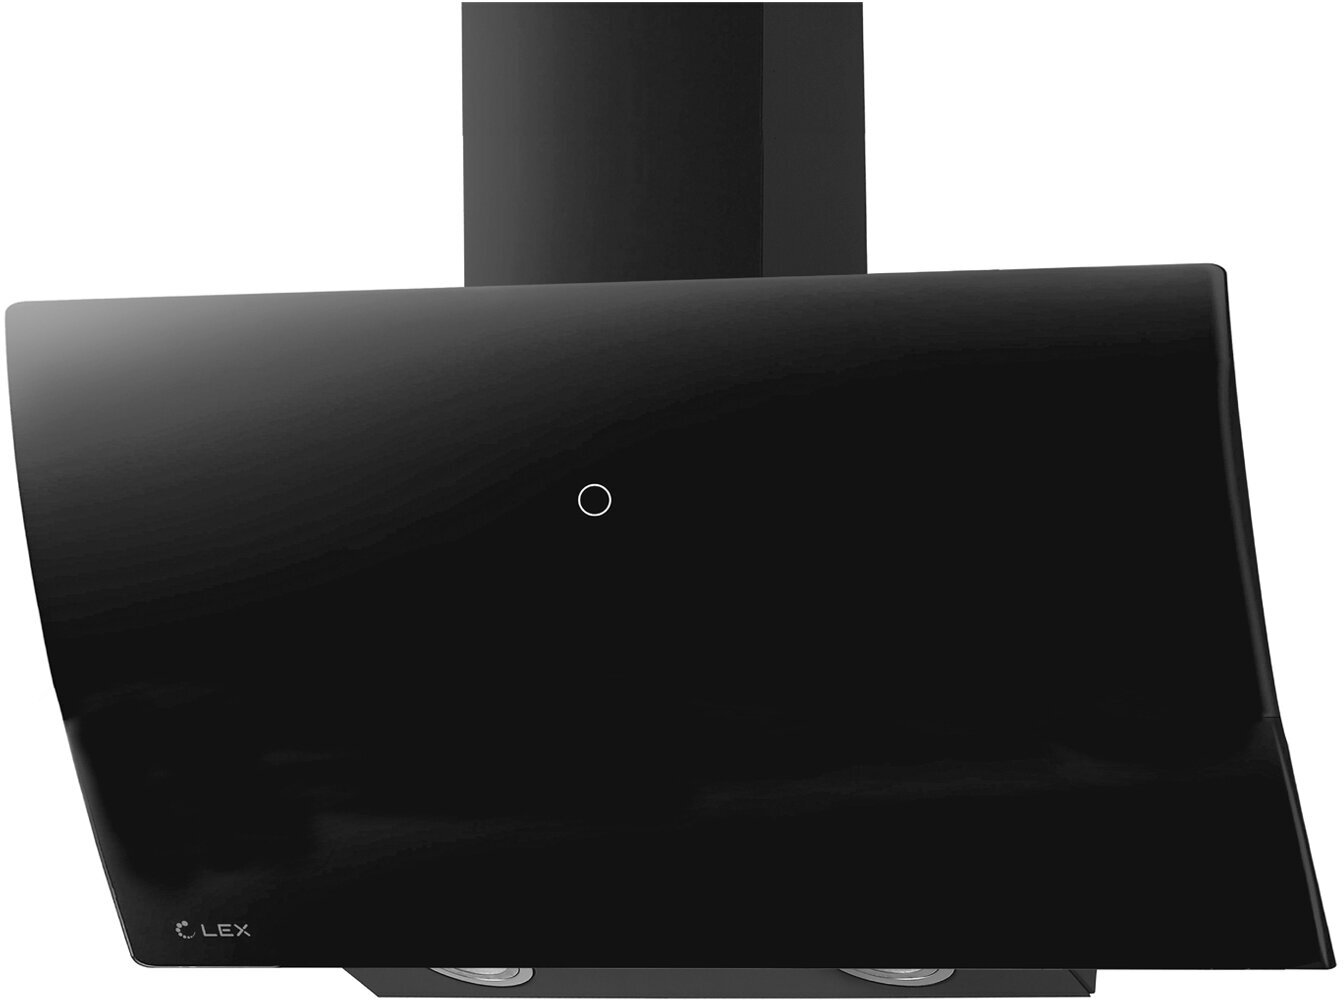 Купольная вытяжка LEX Plaza GS 900, цвет корпуса black, цвет окантовки/панели черный